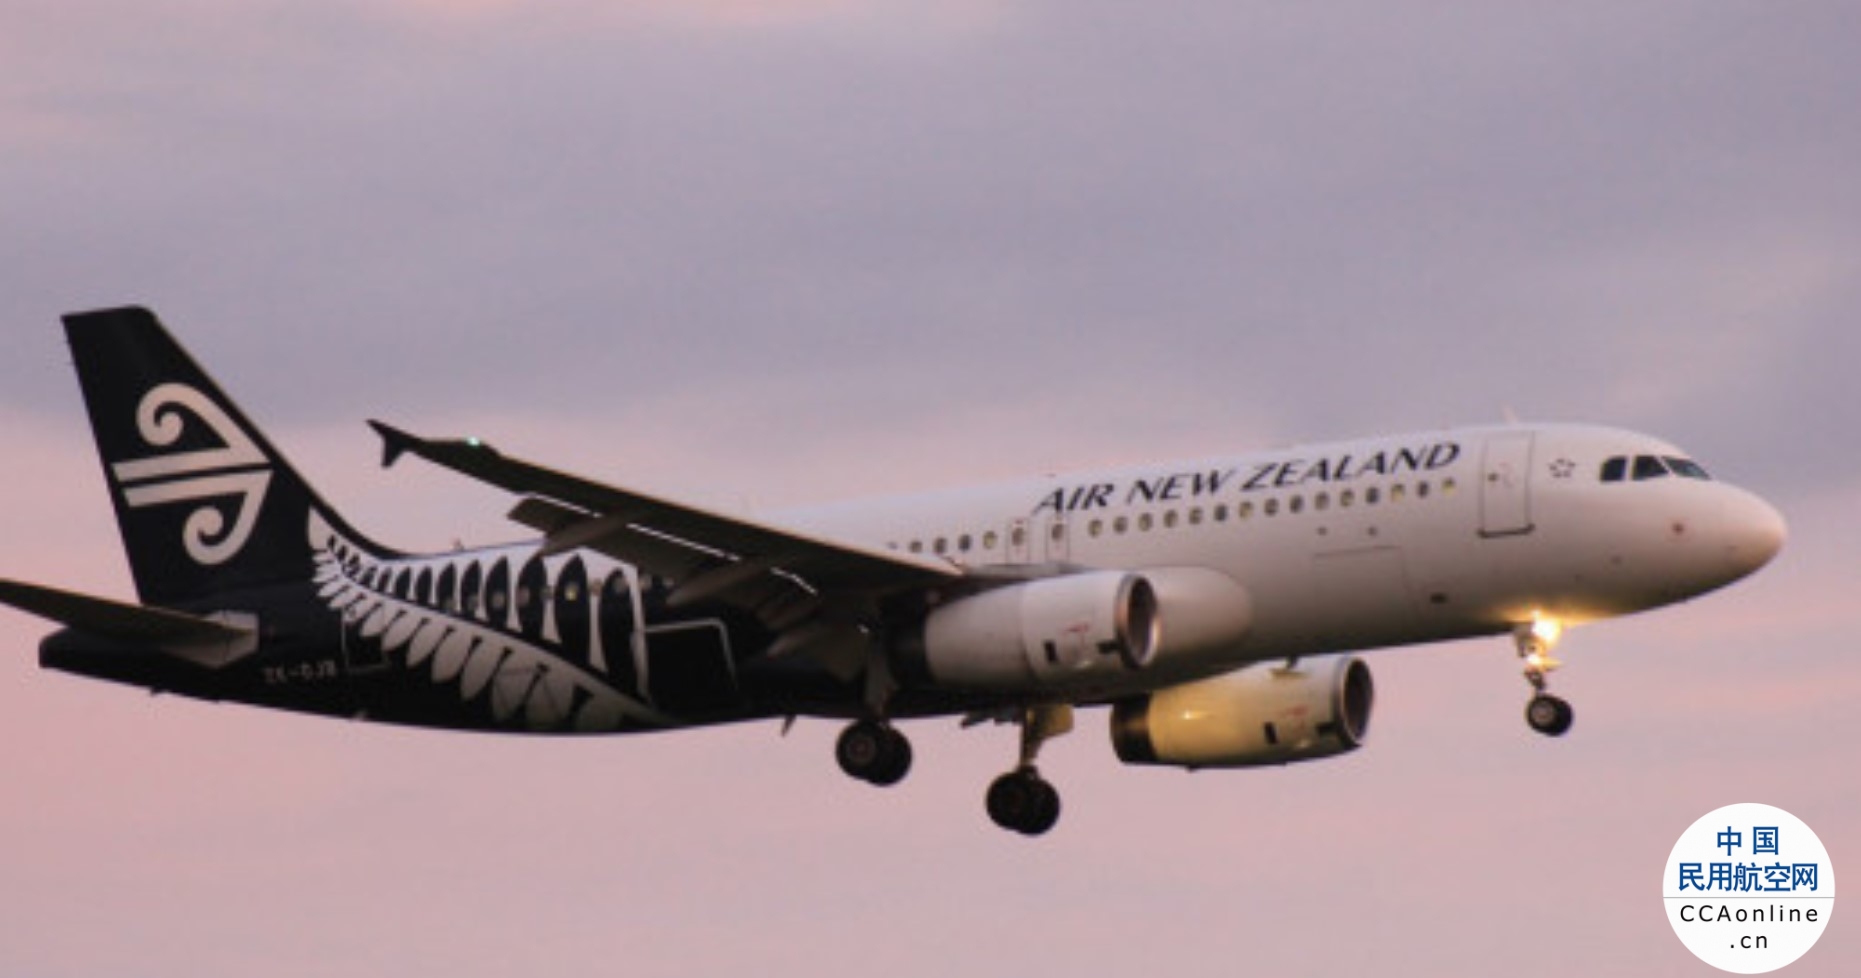 纽航再增加100个航班！你准备好去哪儿玩了吗？| 新西兰旅游 | 新西兰中文先驱网